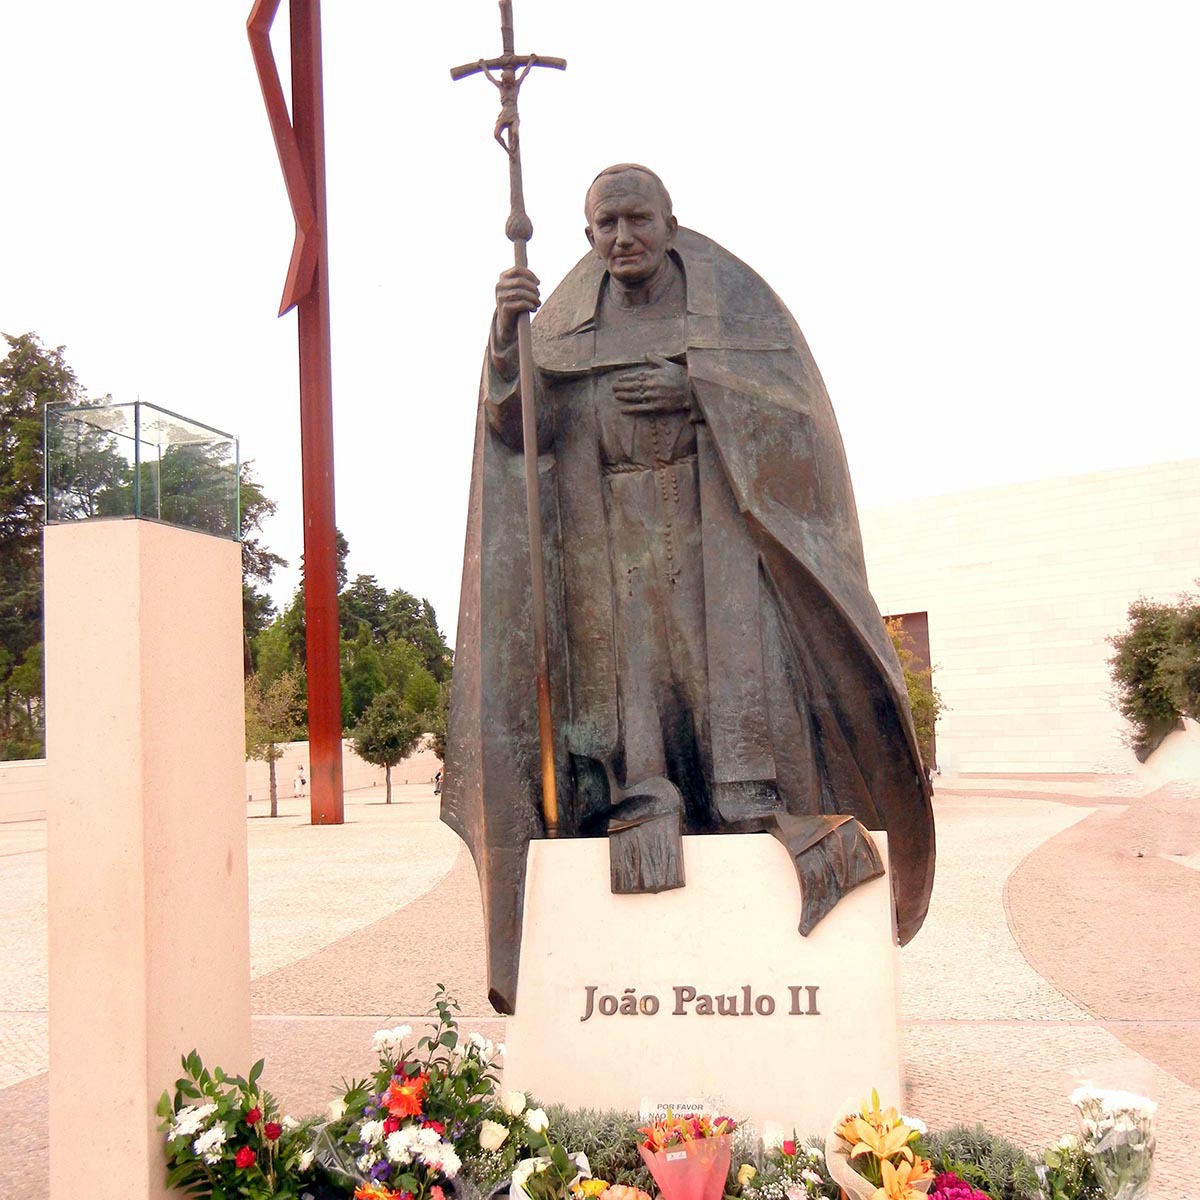 Joao paulo ii statue